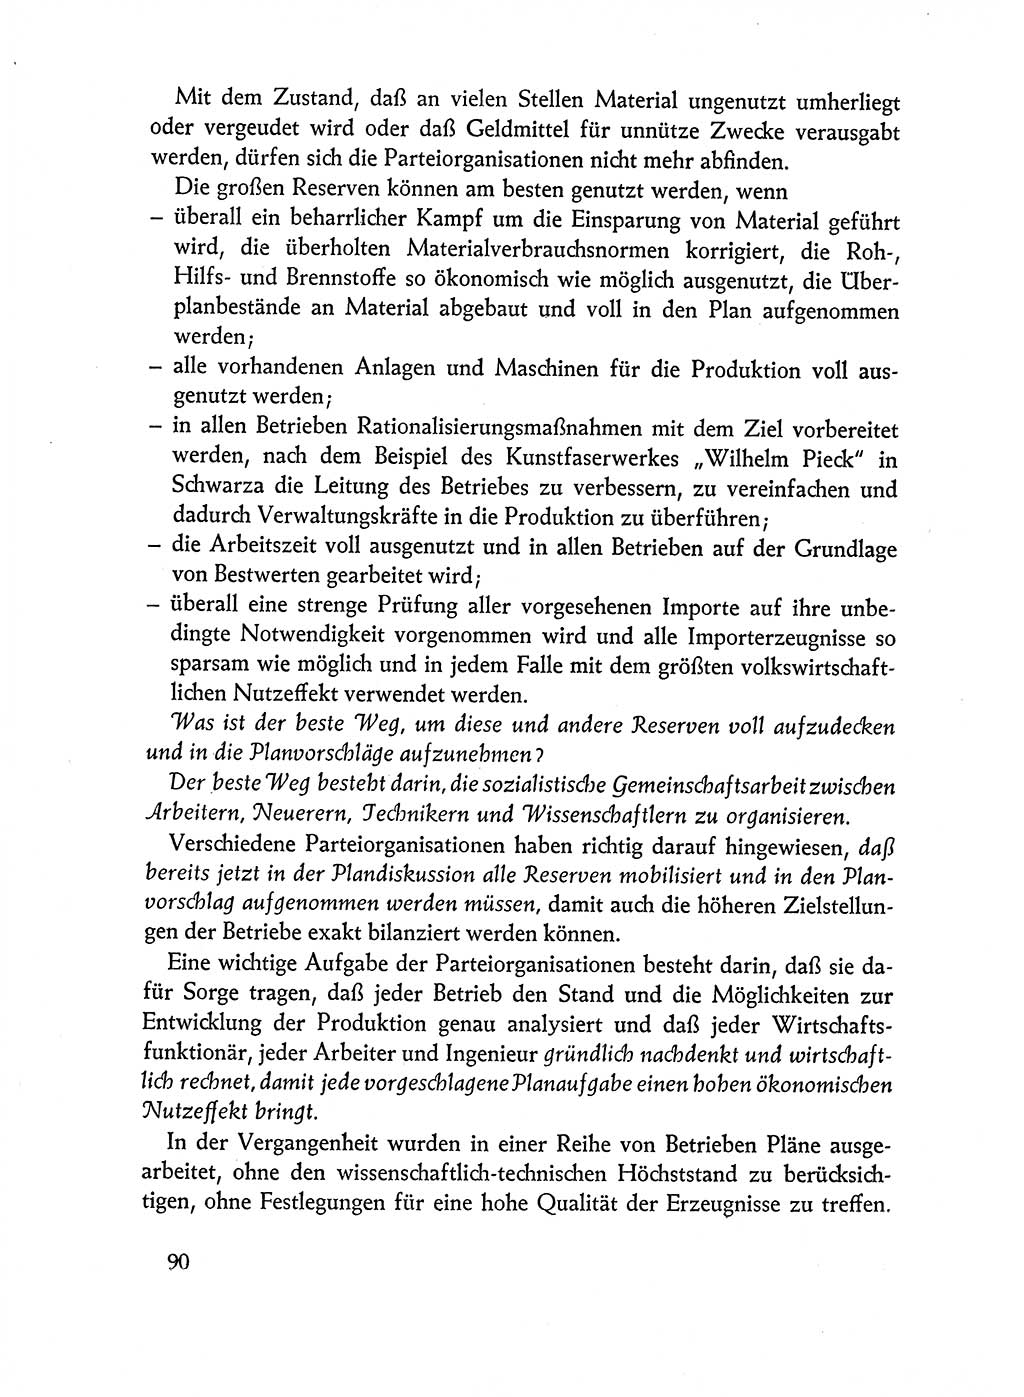 Dokumente der Sozialistischen Einheitspartei Deutschlands (SED) [Deutsche Demokratische Republik (DDR)] 1962-1963, Seite 90 (Dok. SED DDR 1962-1963, S. 90)